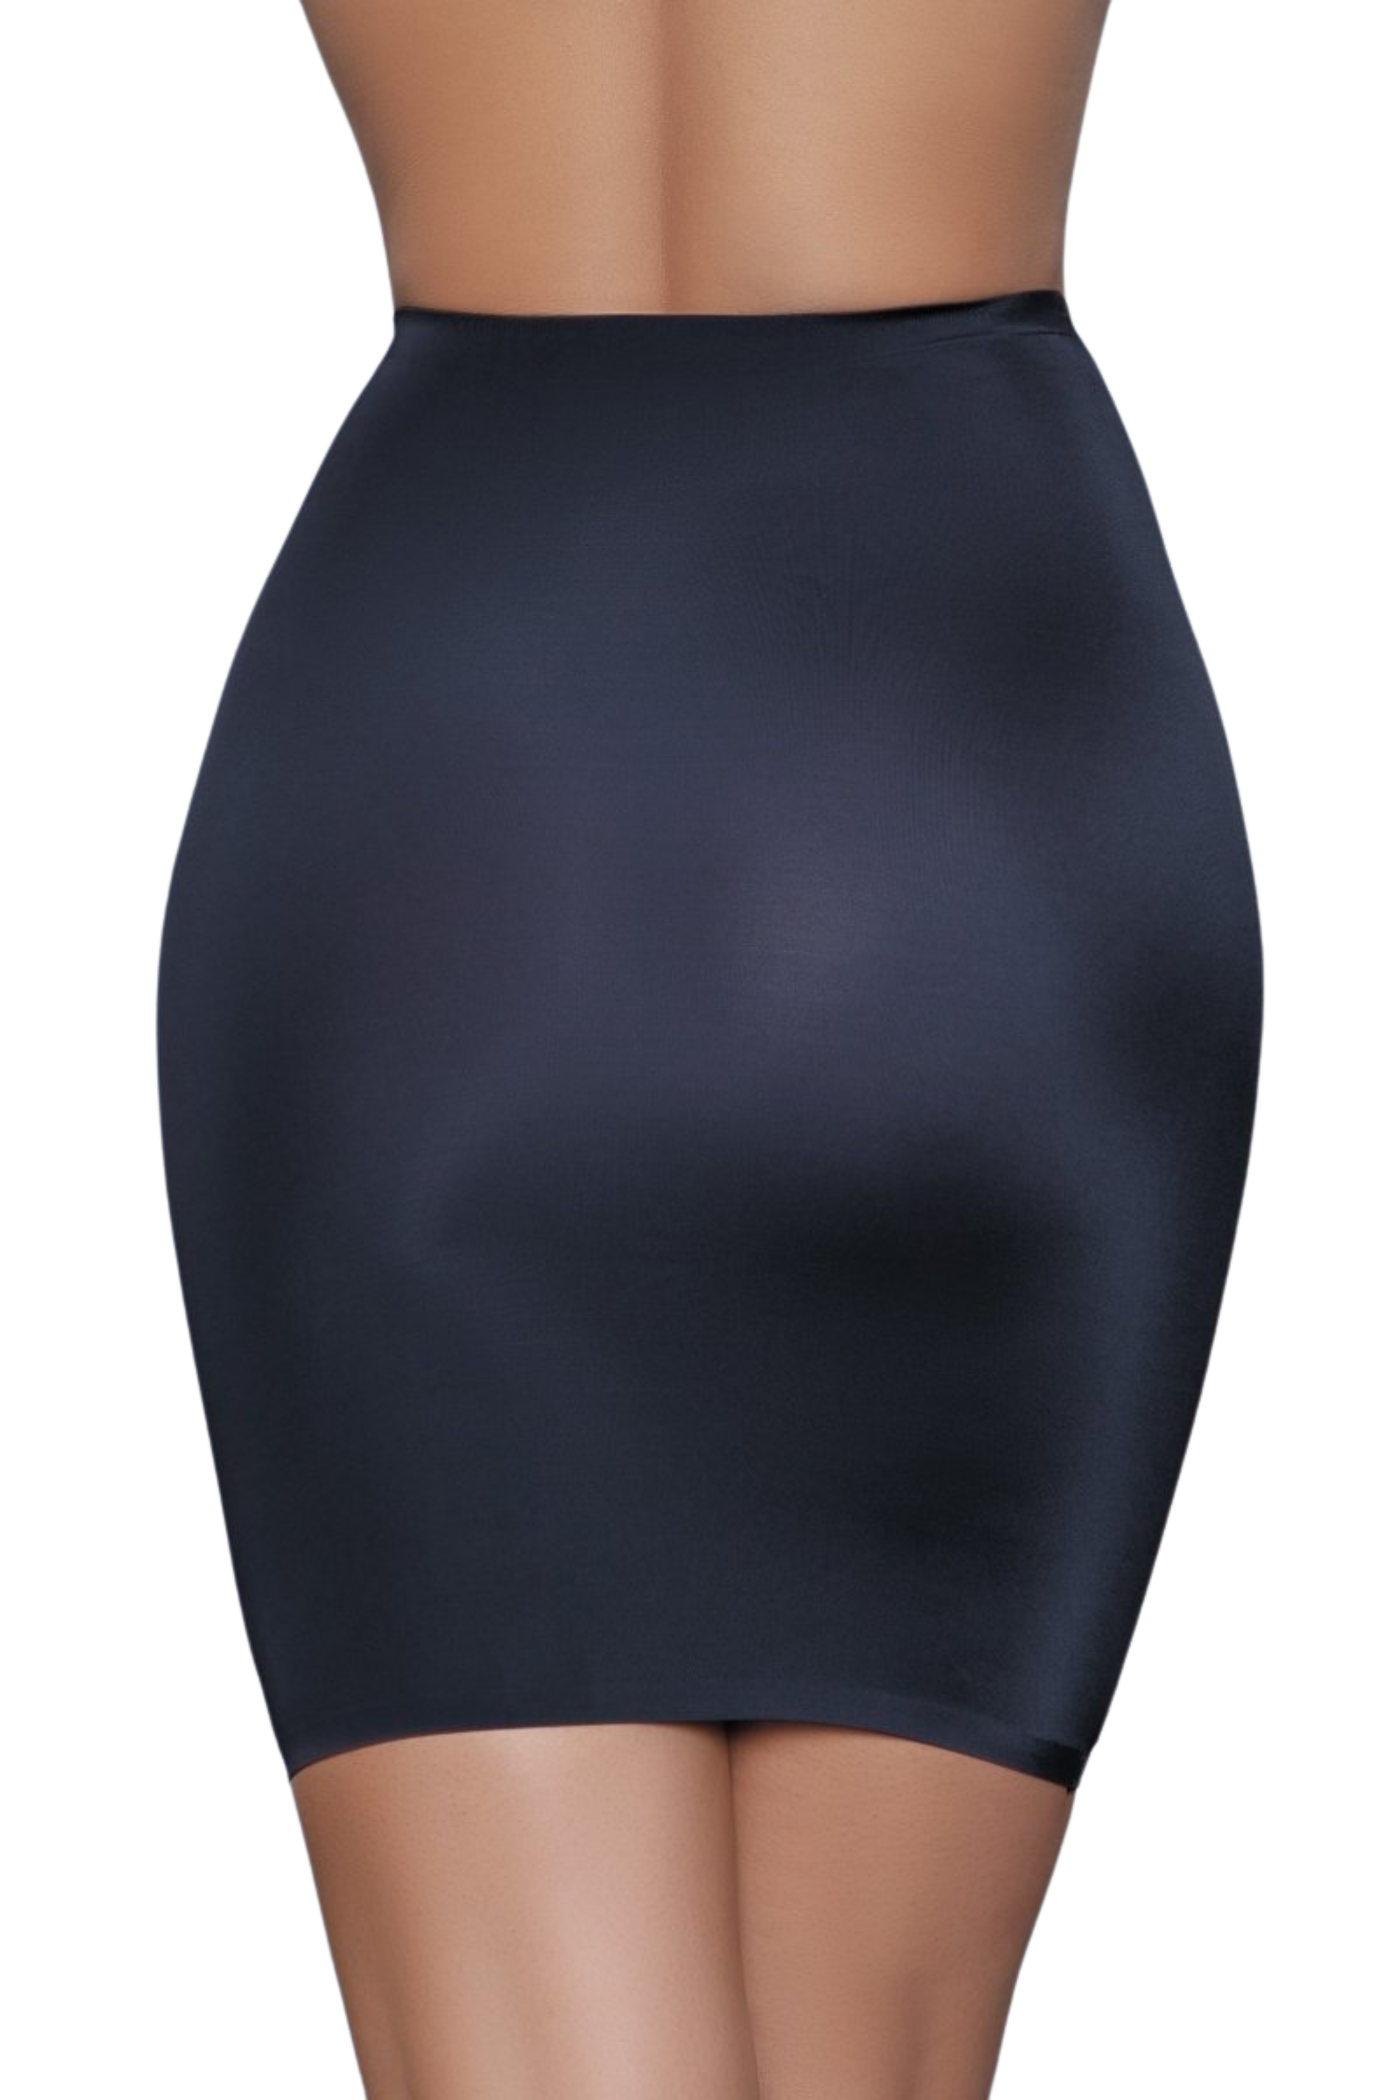 Shapewear Slip Skirt - For Love of Lingerie